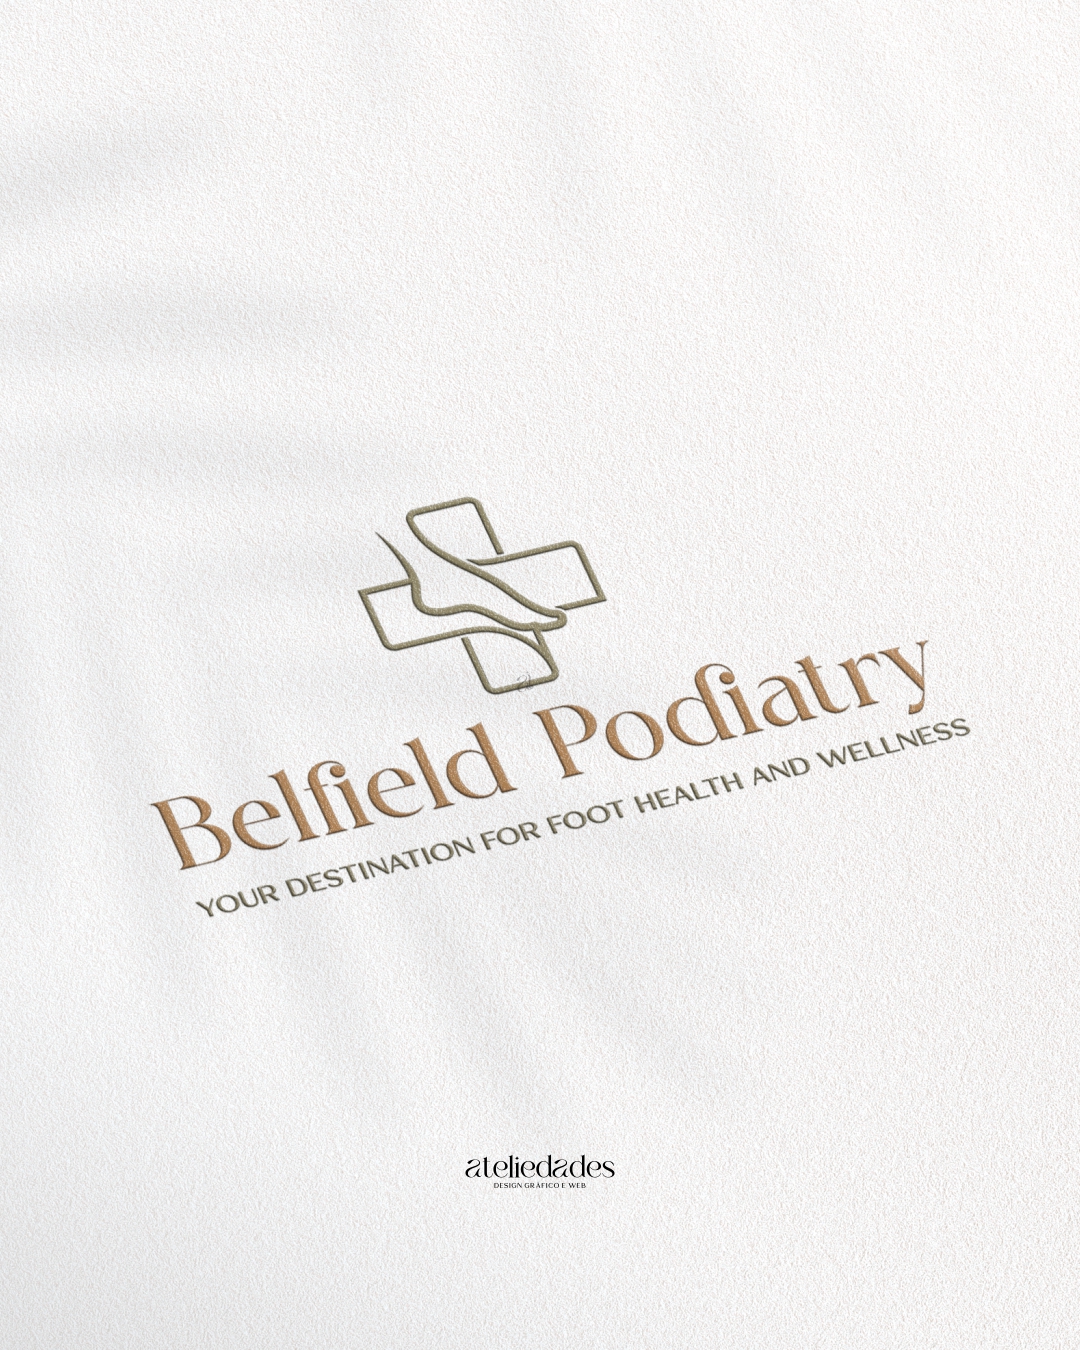 ateliedades logotipo podiatria belfield podiatry